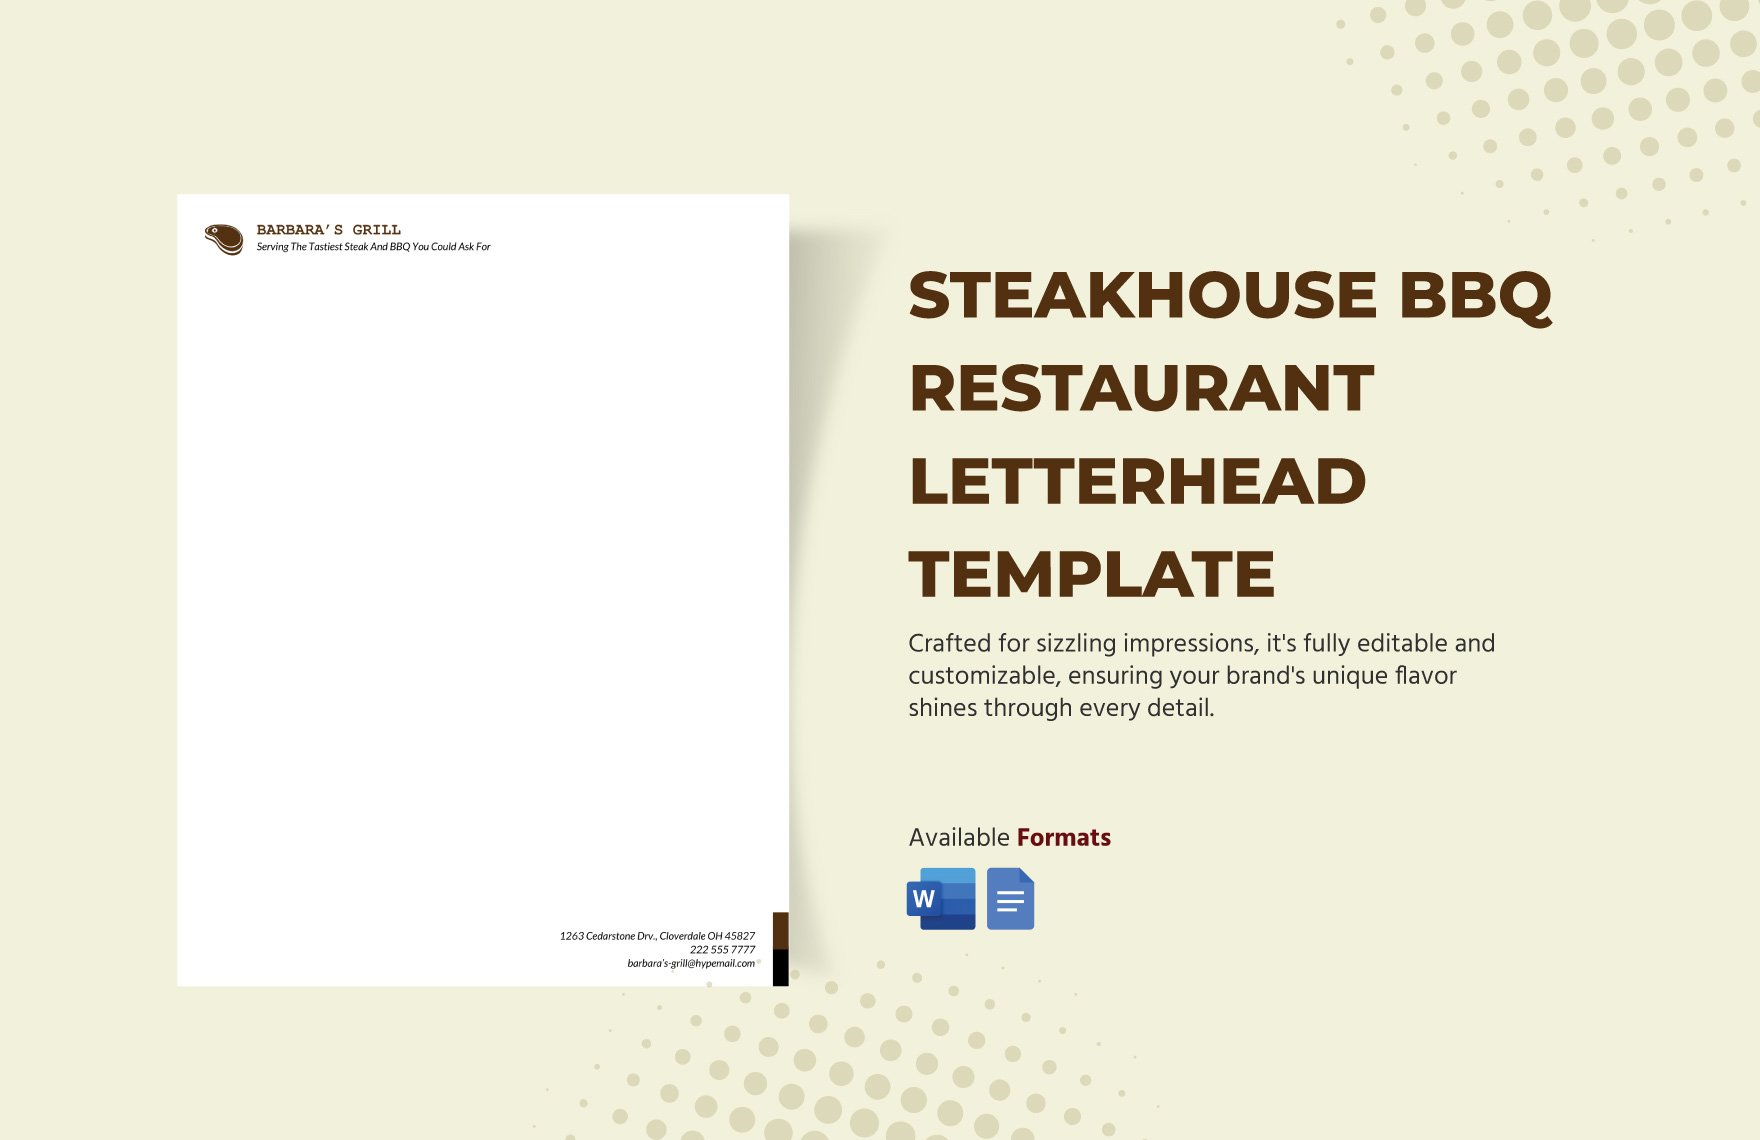 Steakhouse BBQ Restaurant Letterhead Template